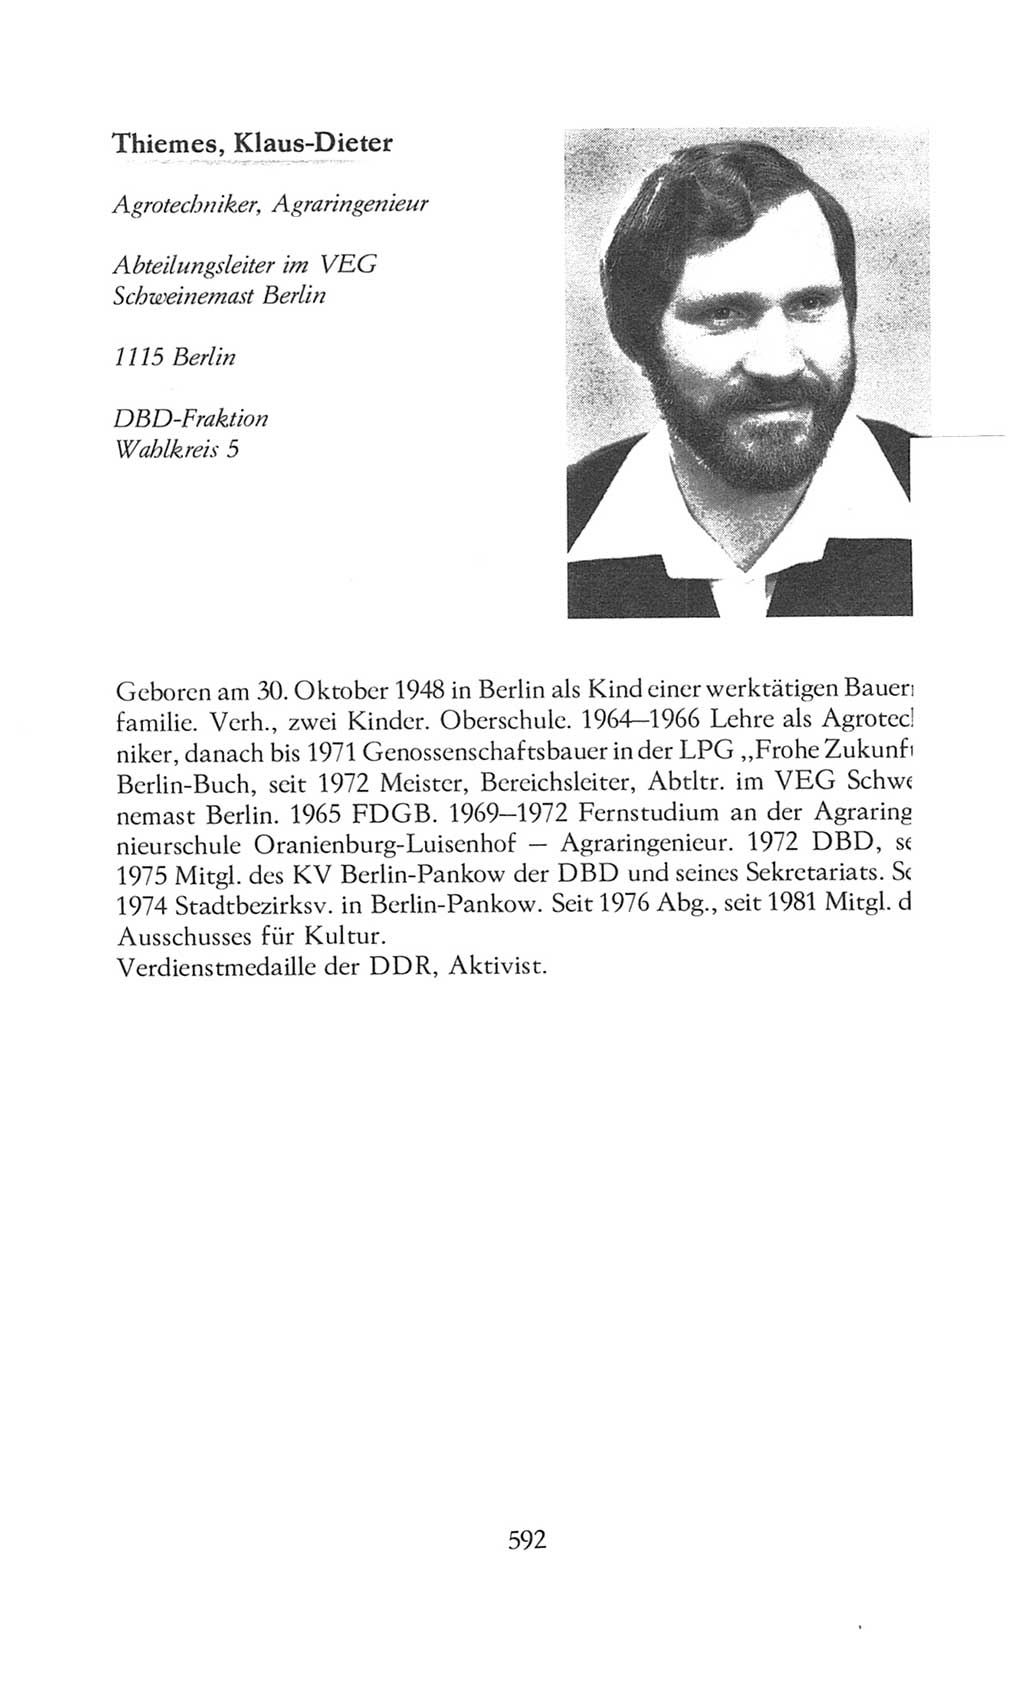 Volkskammer (VK) der Deutschen Demokratischen Republik (DDR), 8. Wahlperiode 1981-1986, Seite 592 (VK. DDR 8. WP. 1981-1986, S. 592)